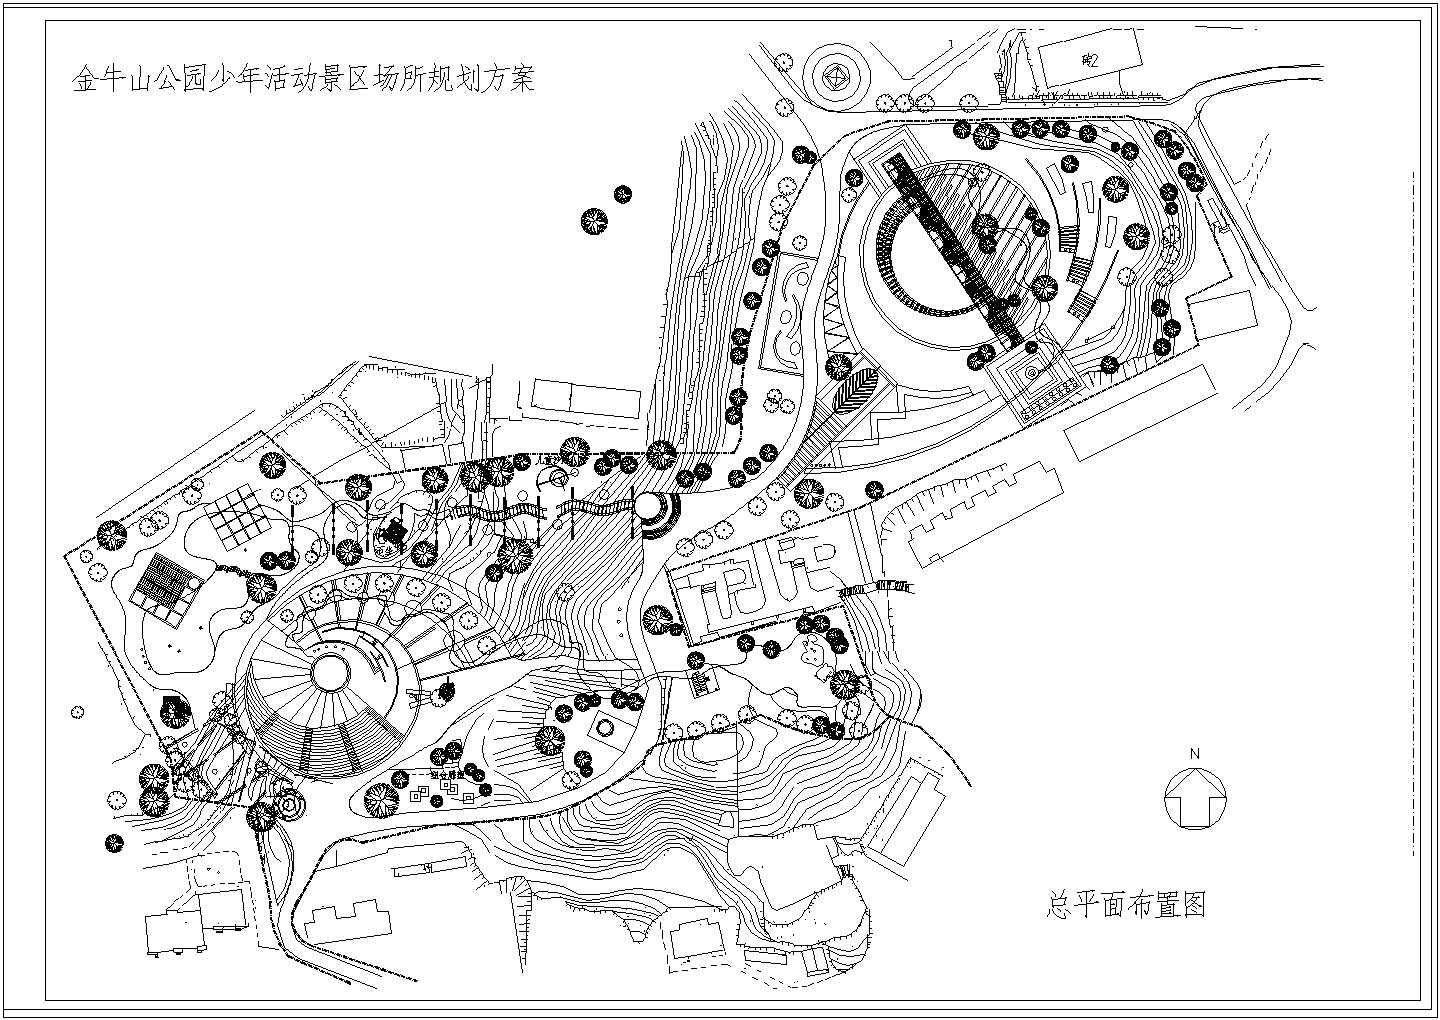 一套简单实用的城市公园规划设计图纸